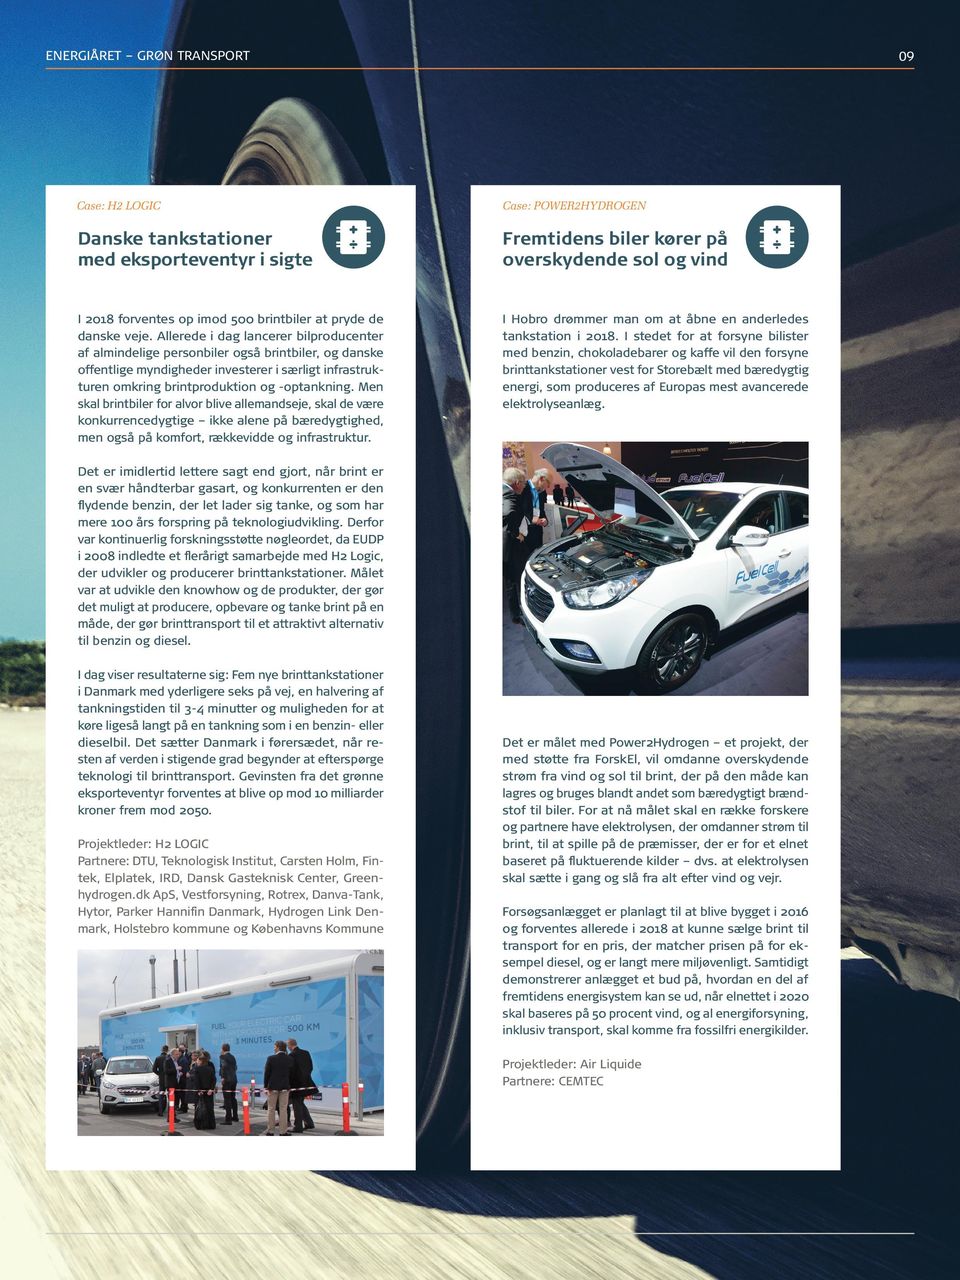 Allerede i dag lancerer bilproducenter af almindelige personbiler også brintbiler, og danske offentlige myndigheder investerer i særligt infrastrukturen omkring brintproduktion og -optankning.